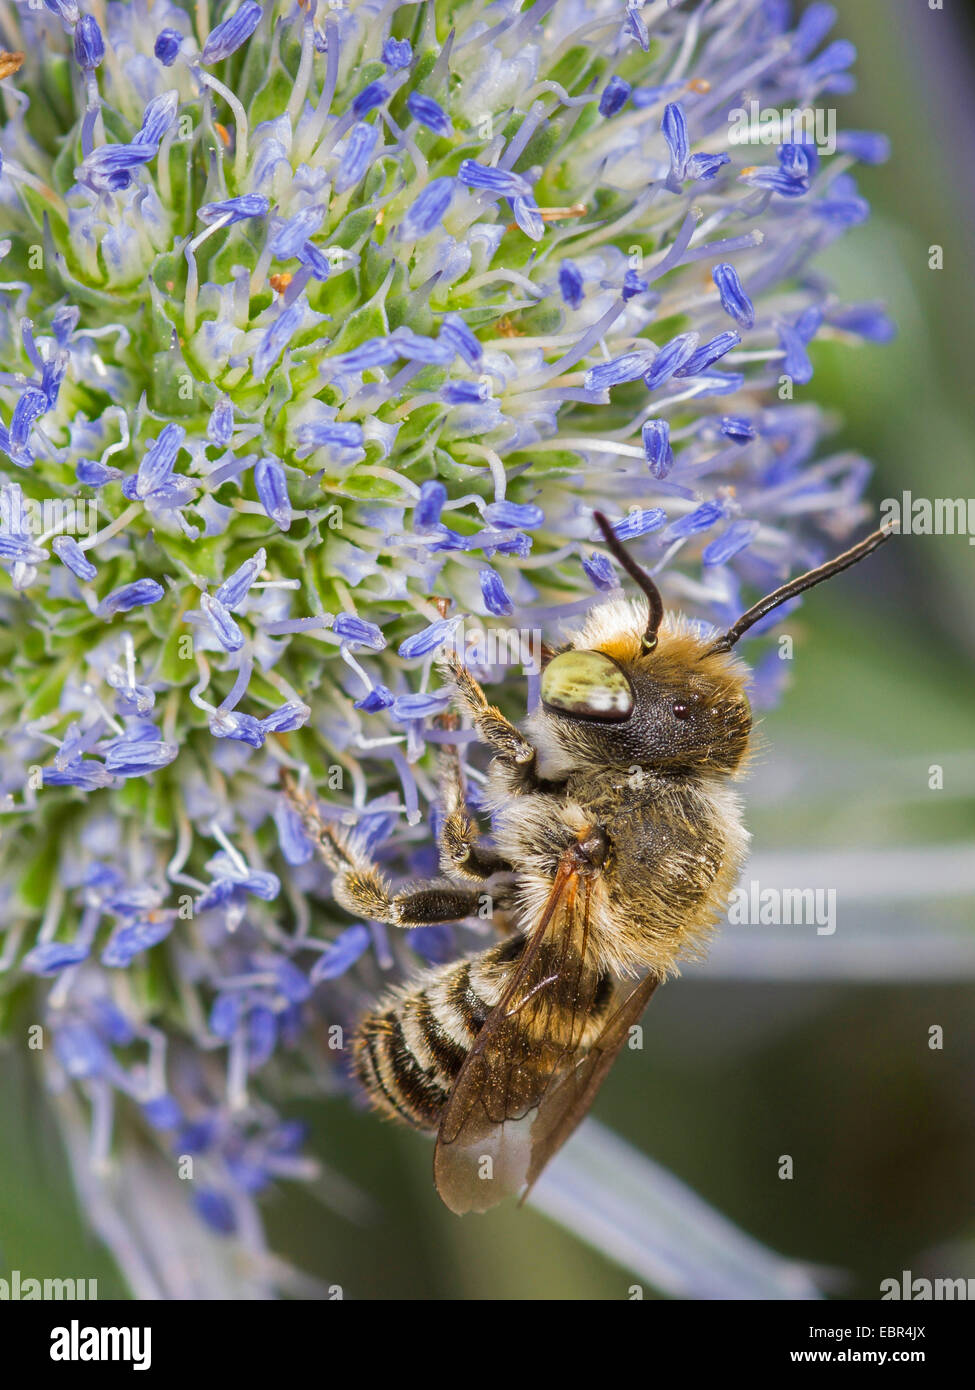 L'abeille découpeuse de la luzerne (Megachile rotundata), mâle sur l'Eryngium planum, Allemagne Banque D'Images